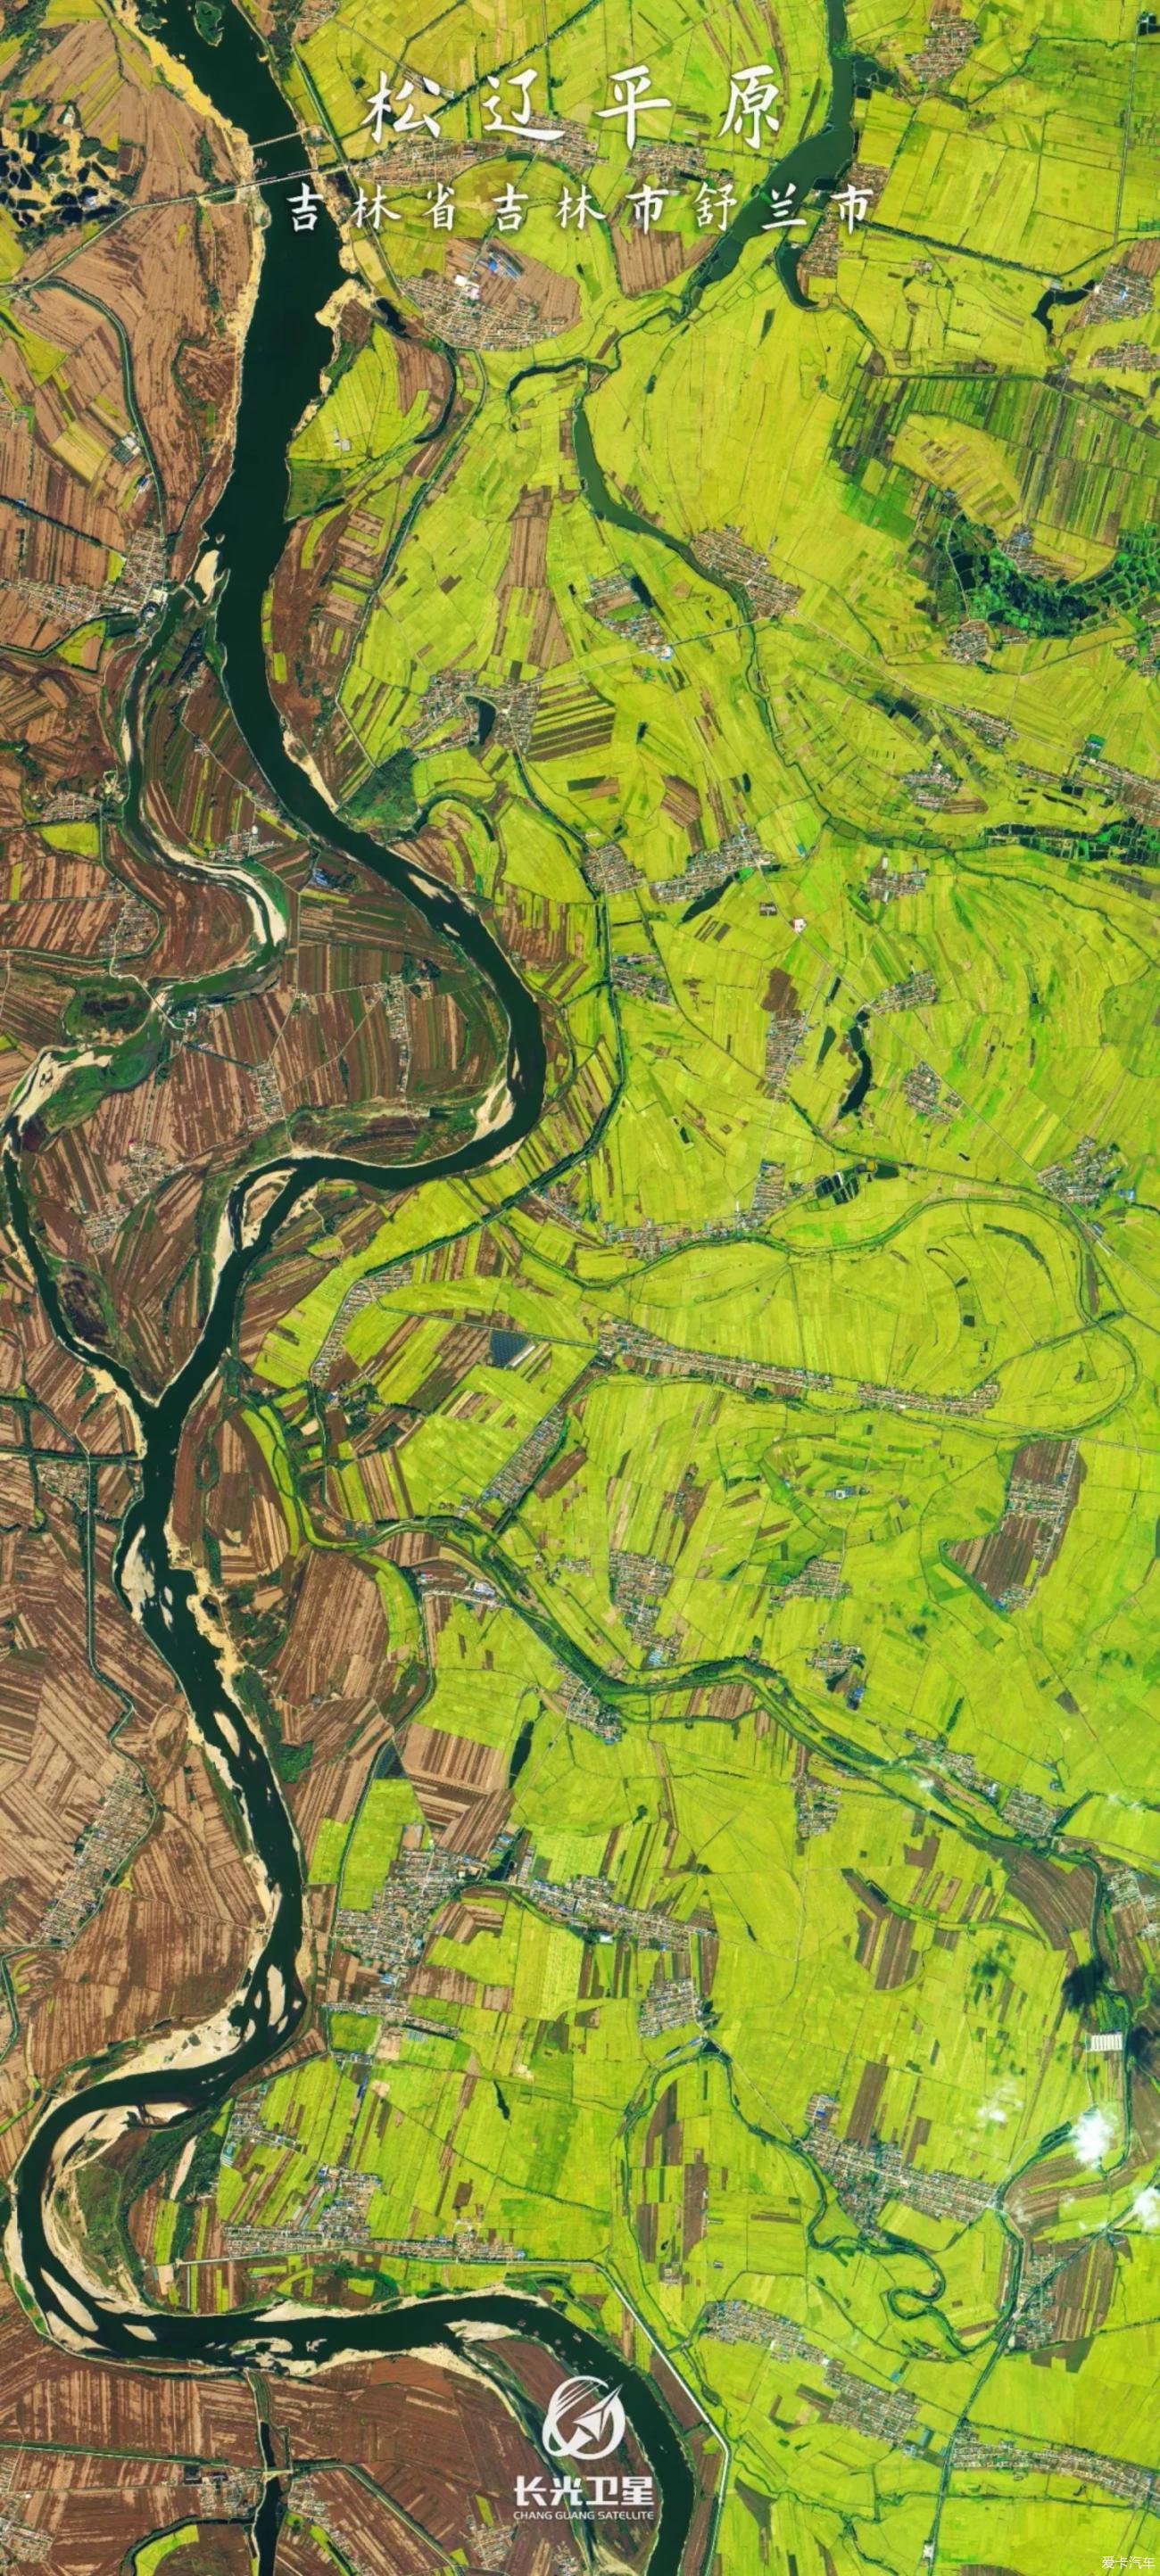 长光卫星的吉林一号星座拍摄的一亿像素的中国农业